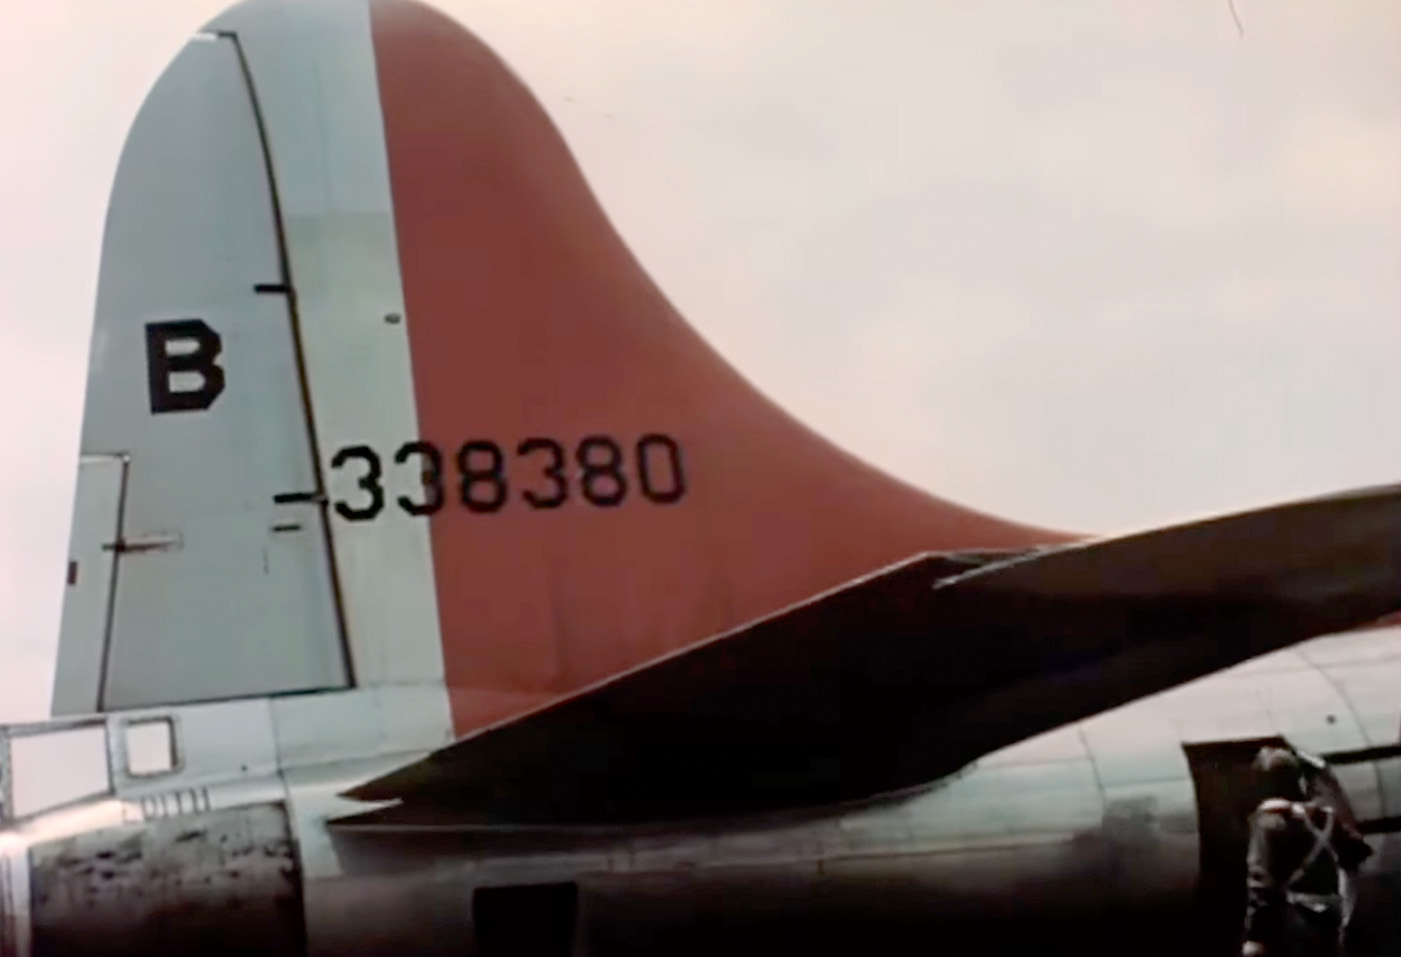 B-17 #43-38380 / Toni 7th